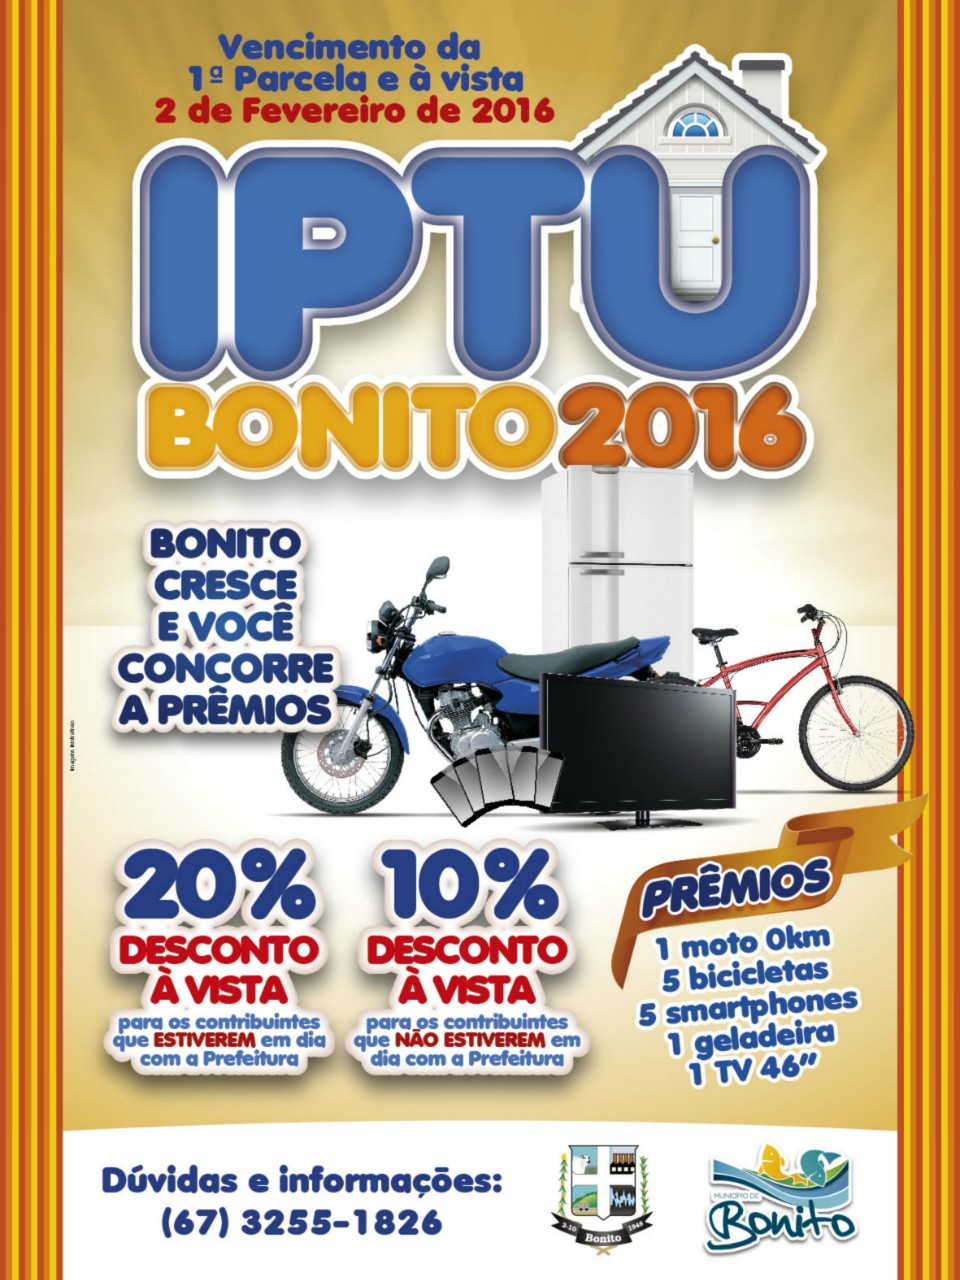 IPTU com 20% e 10% de desconto vence no próximo dia 02 de fevereiro